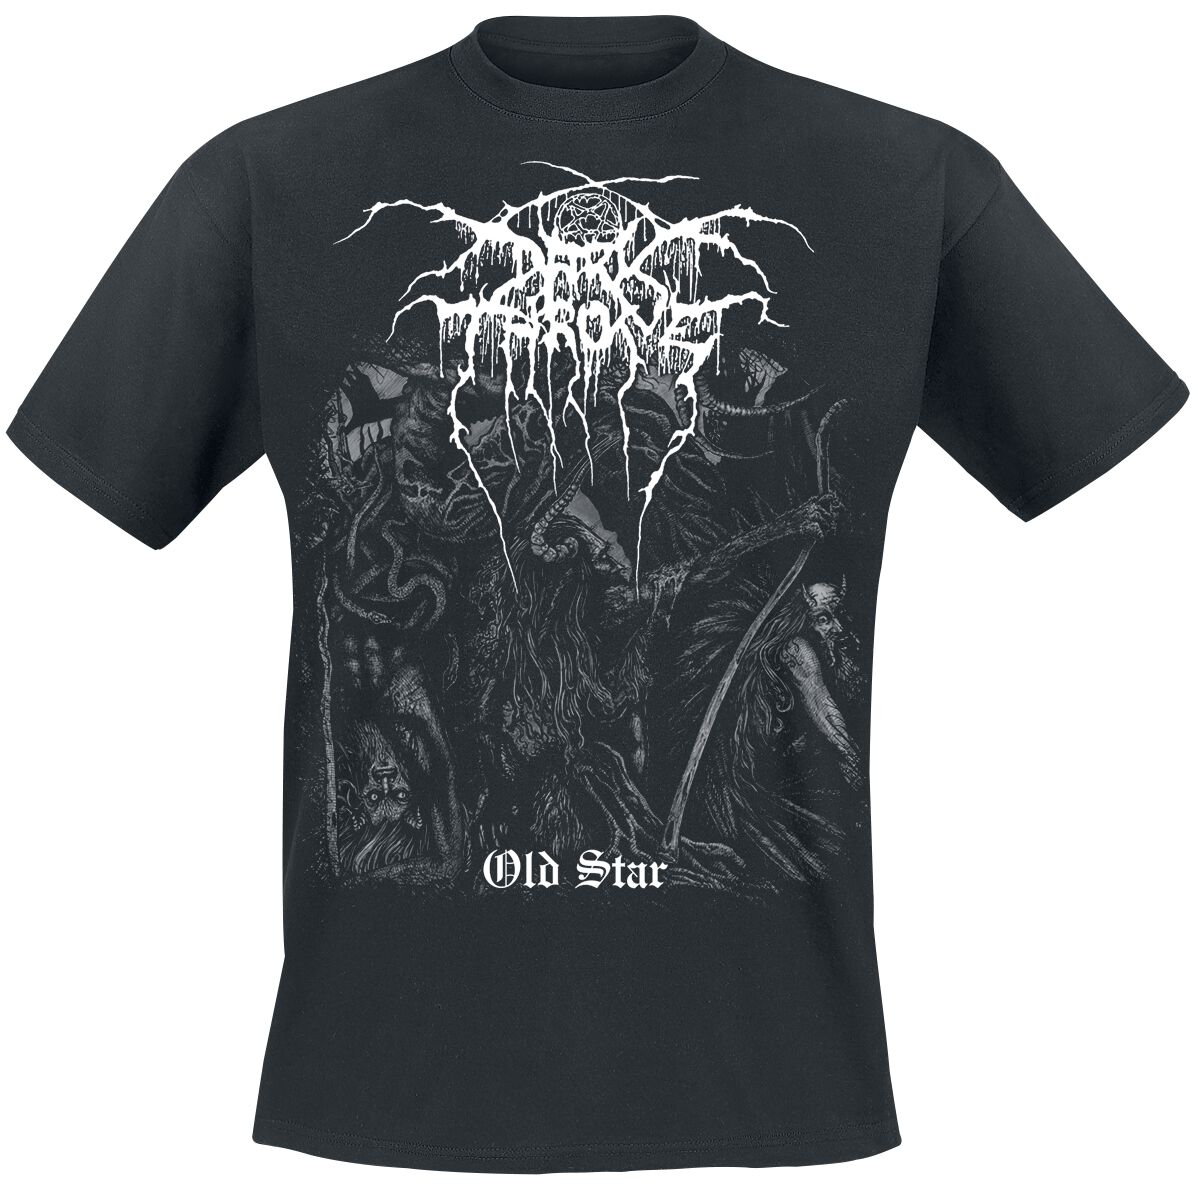 Darkthrone T-Shirt - Old Star - M bis XXL - für Männer - Größe M - schwarz  - Lizenziertes Merchandise!